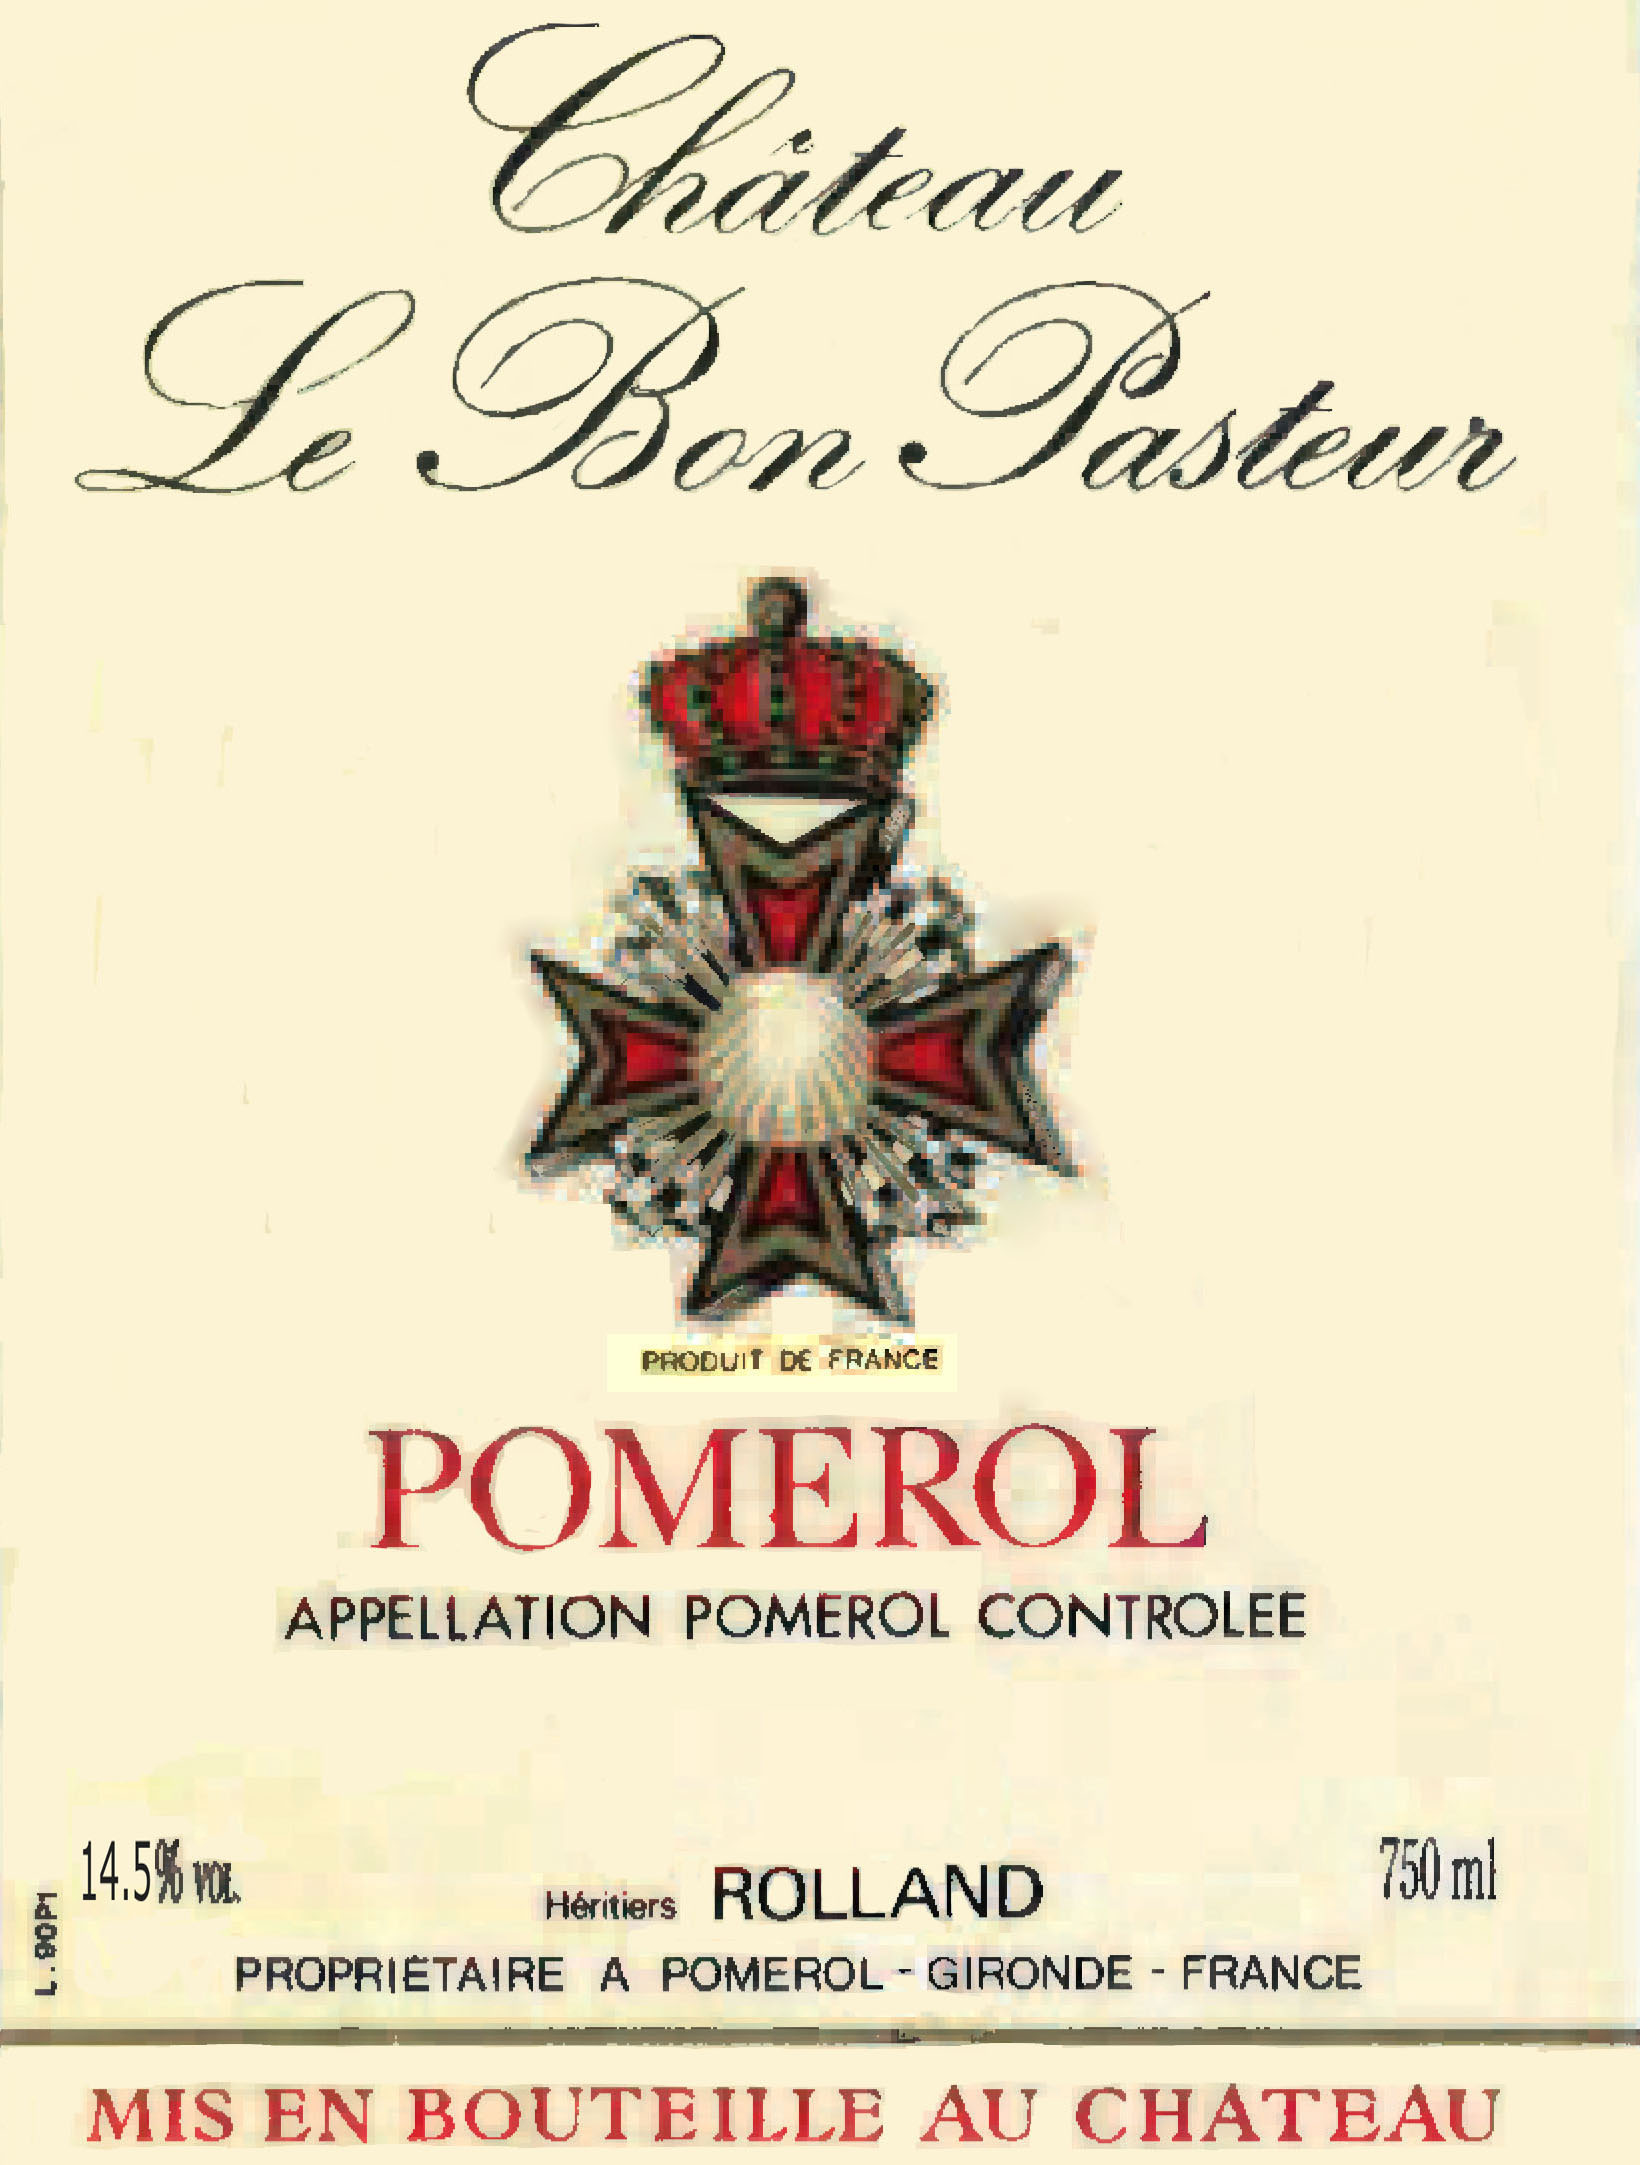 Chateau Le Bon Pasteur label